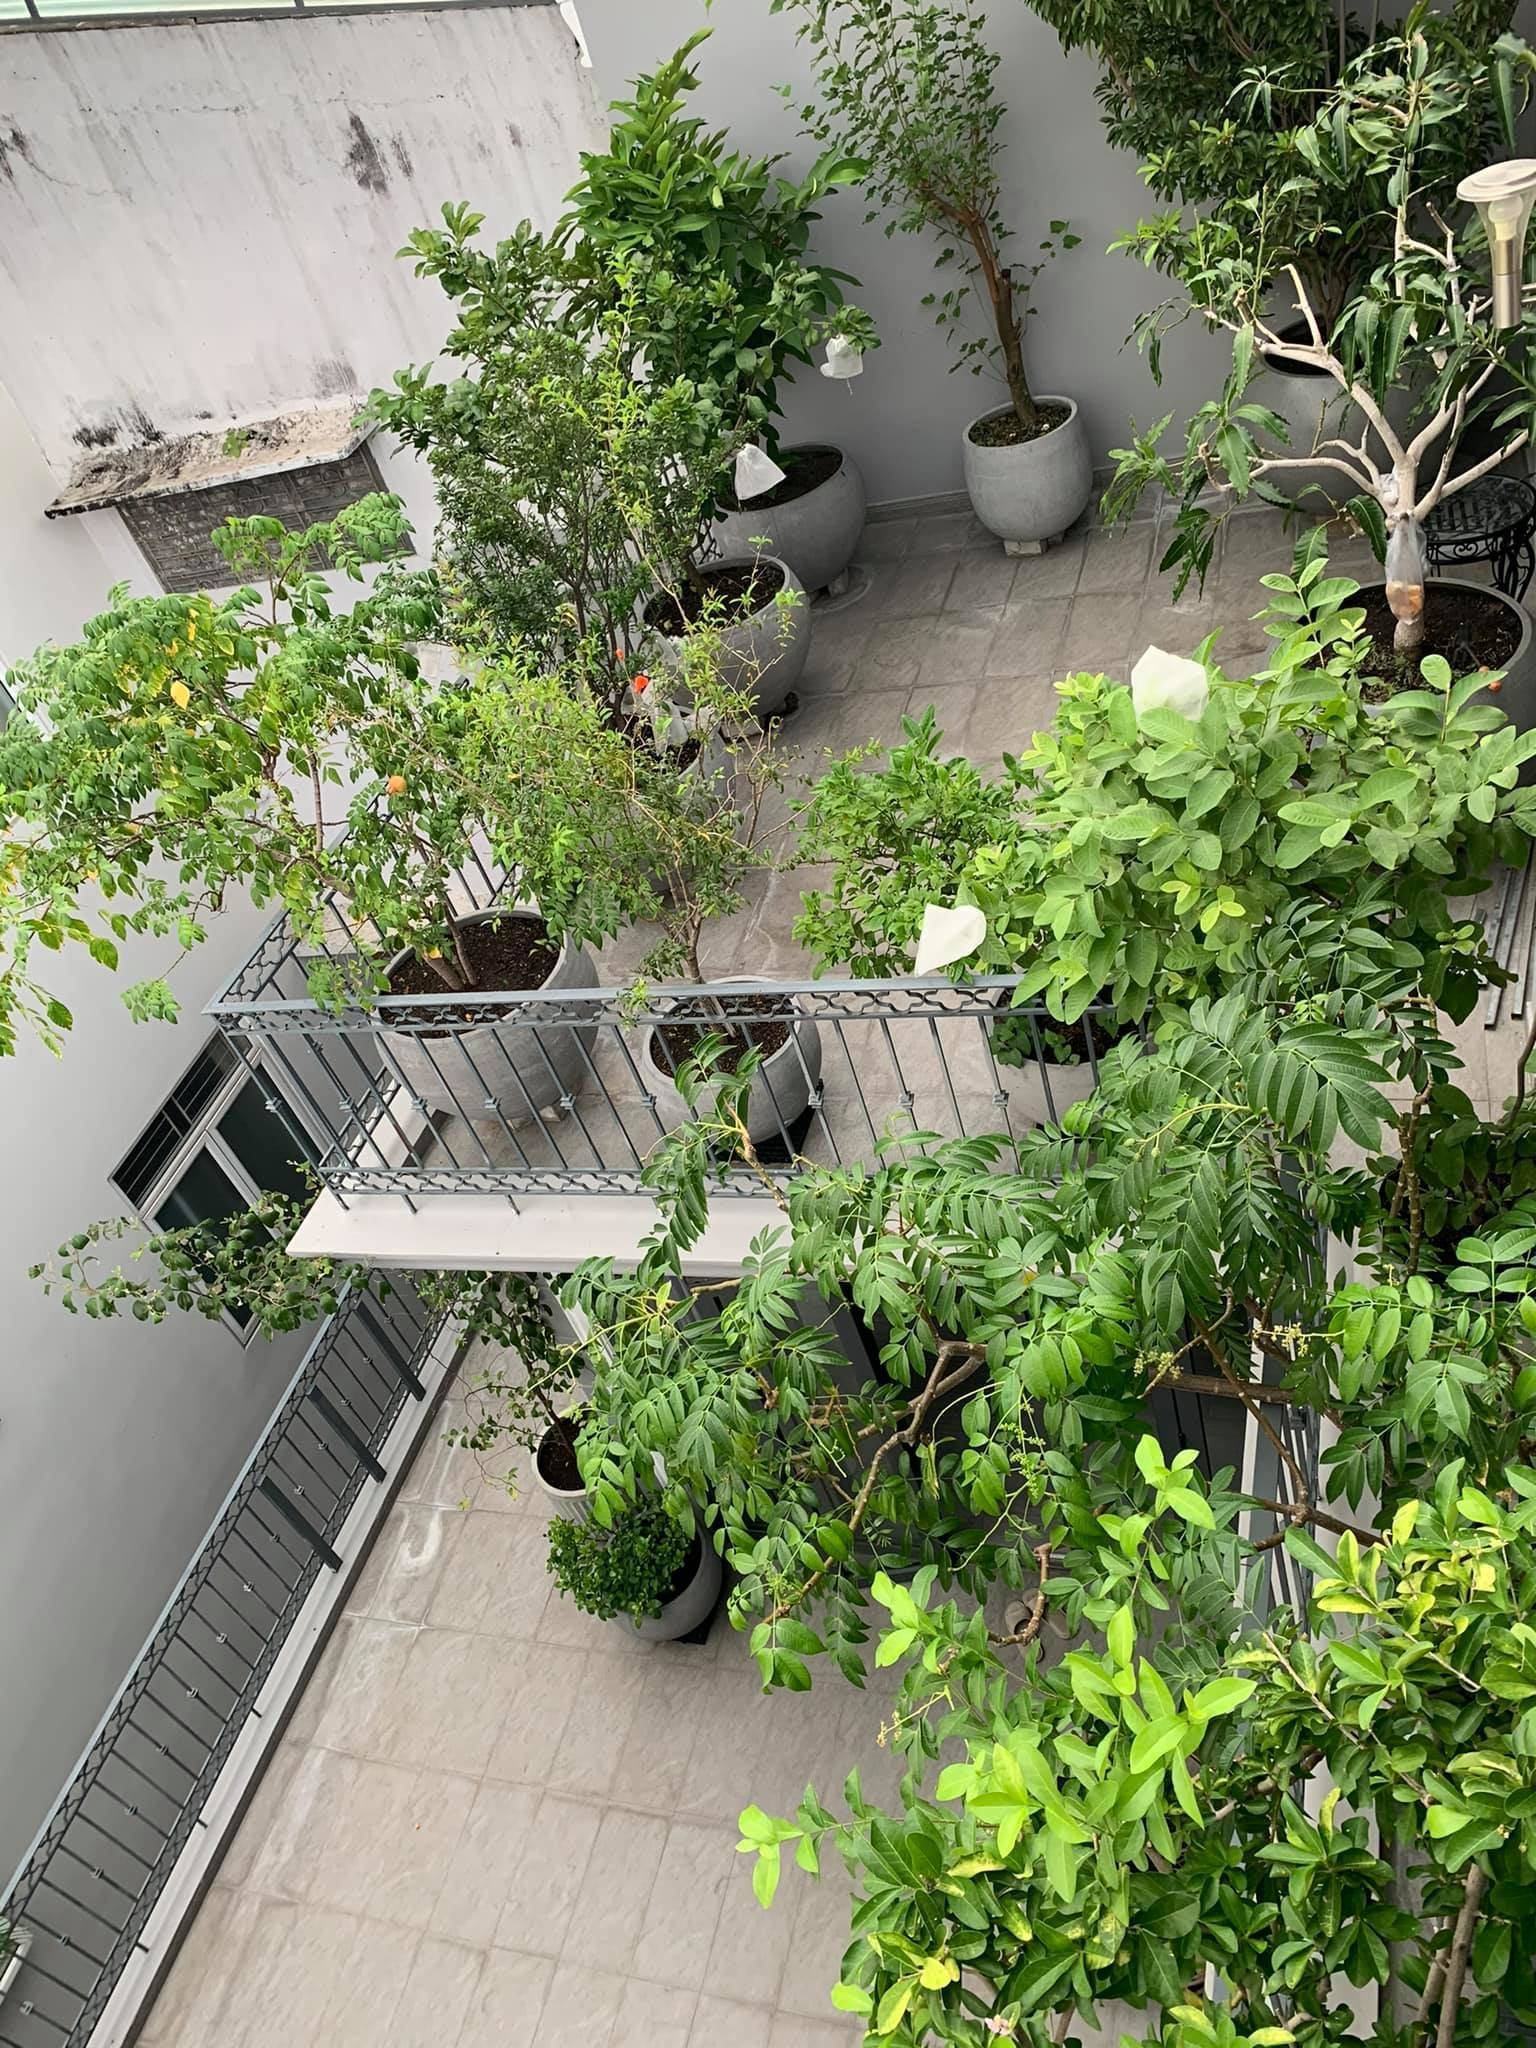 Mát mắt với nhà phố ở Sài Gòn ngập cây xanh, trĩu trịt hoa trái - 2